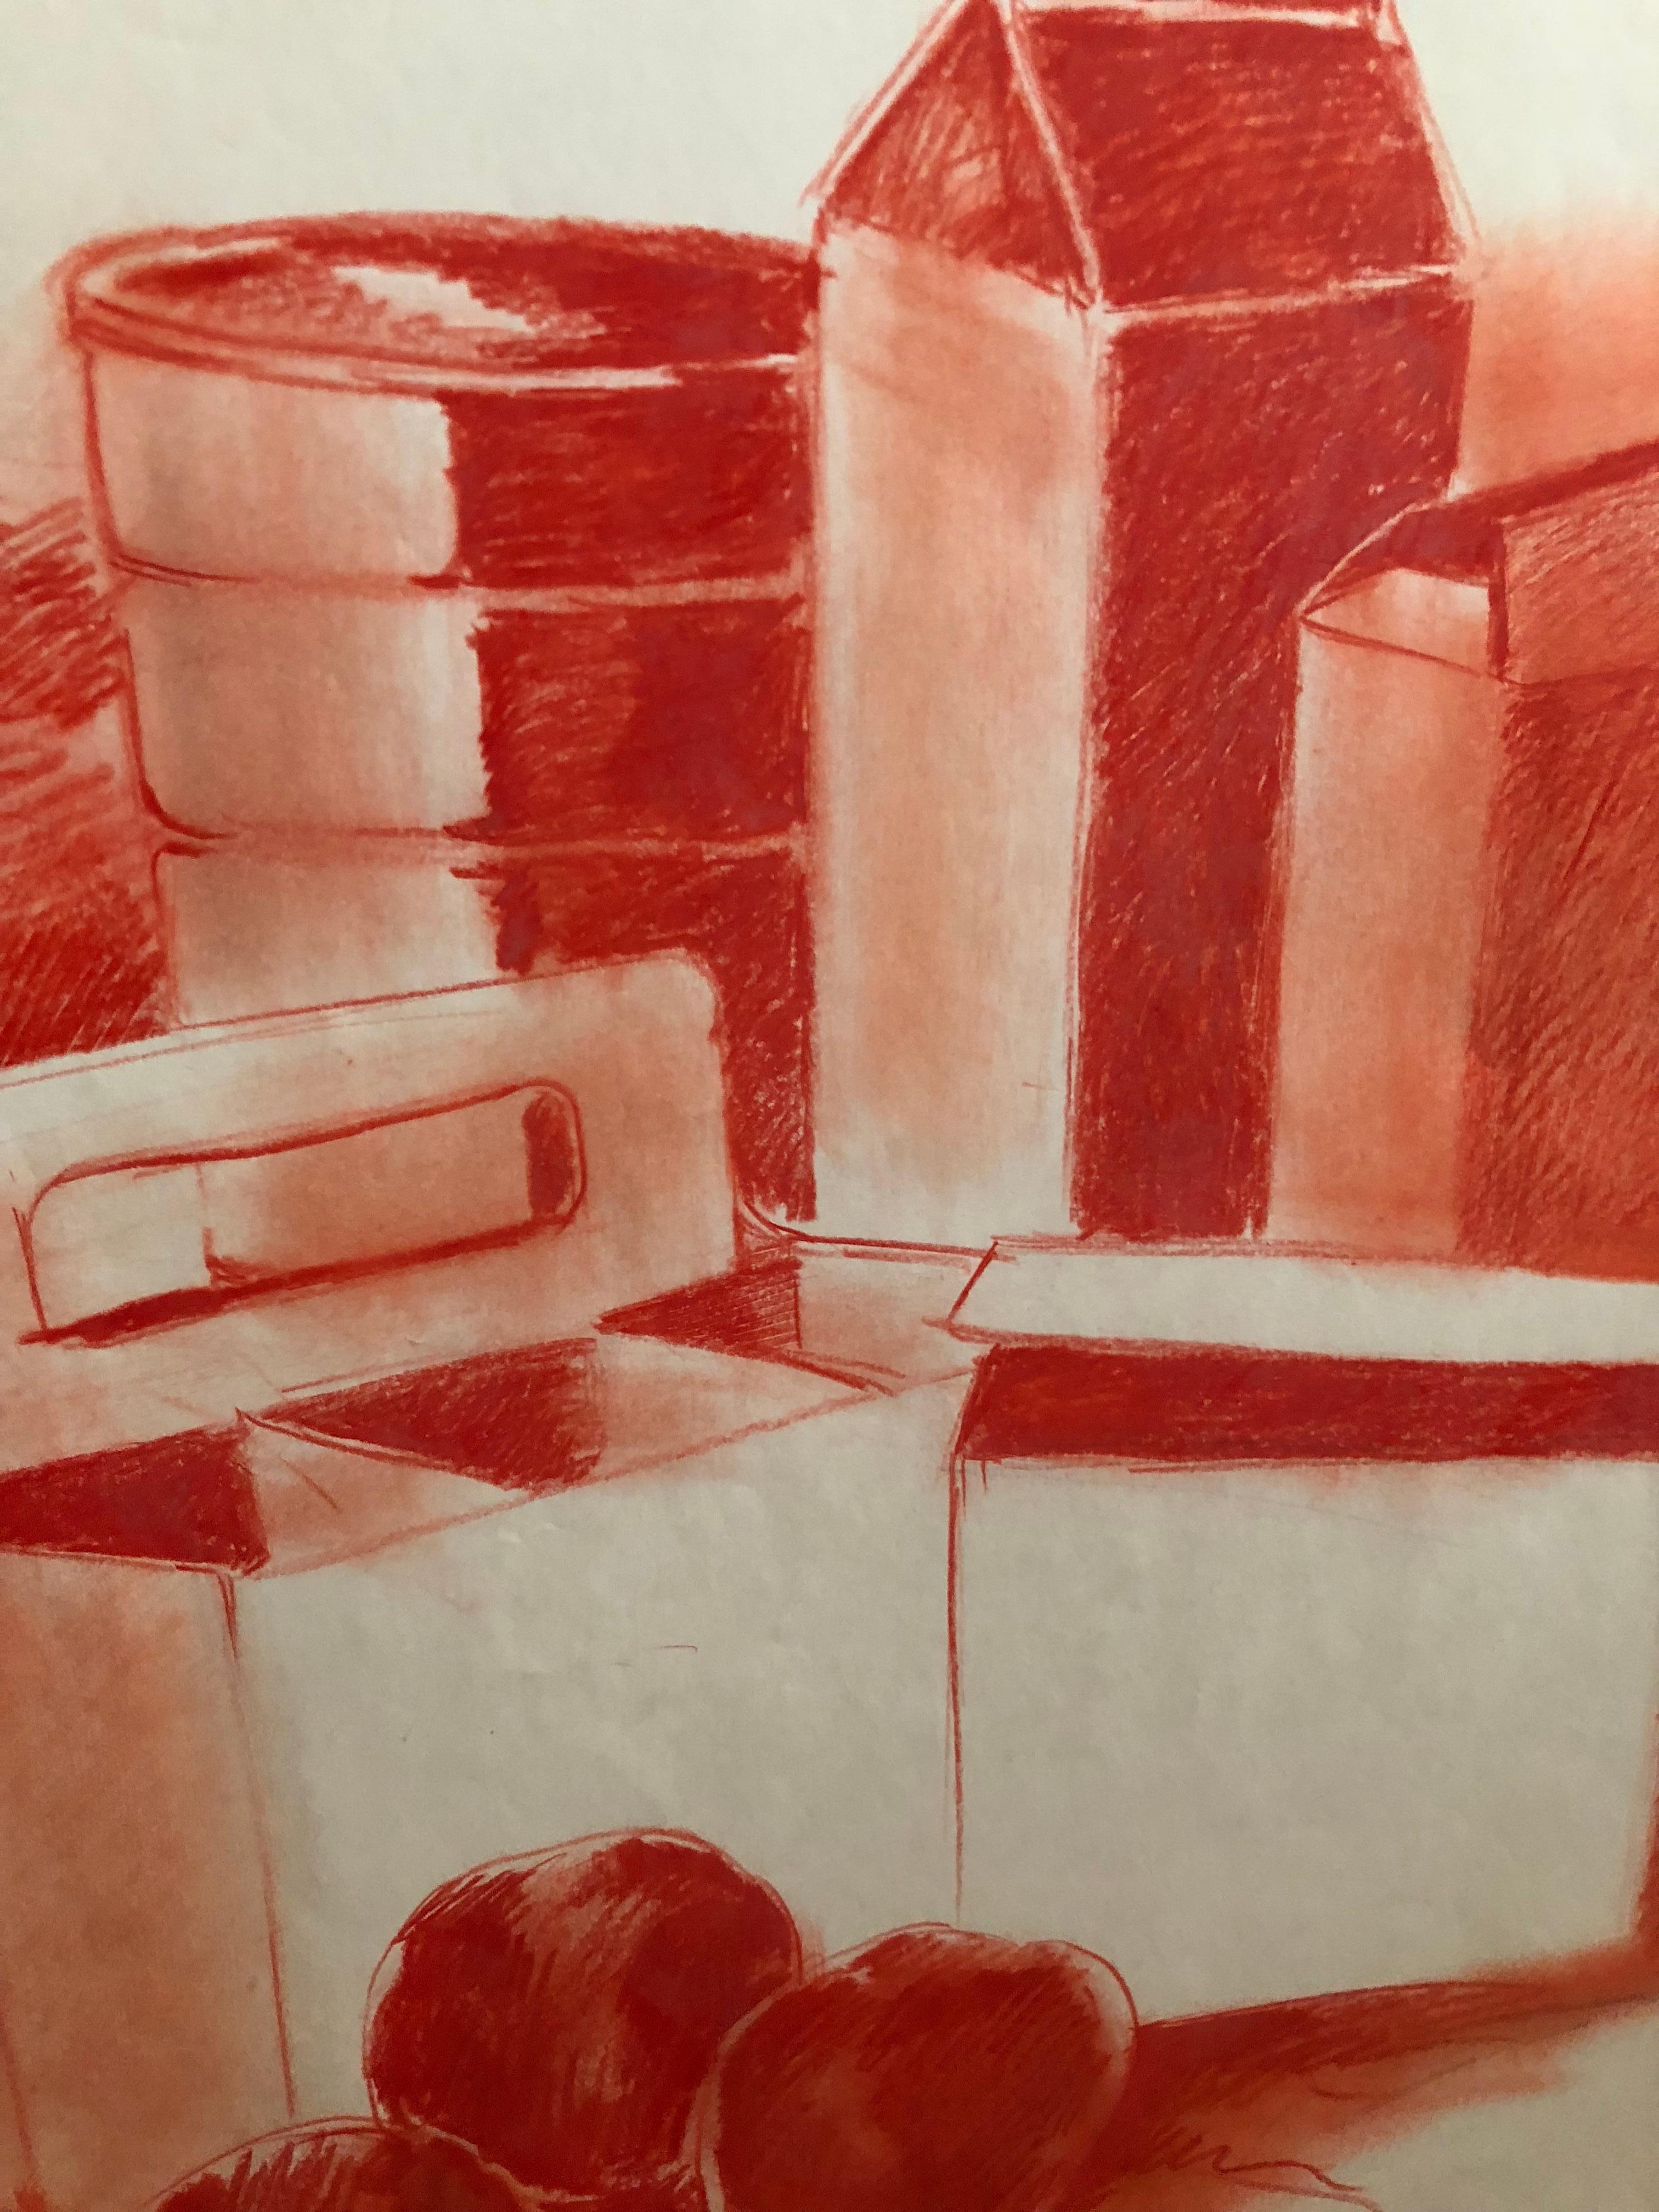 Wunderschöne rote monochrome Pop-Art-Stillleben-Zeichnung auf Papier, inmitten der unbetitelten Tisch-Serie des Künstlers, von der ich einige große Leinwände aufgelistet habe. Lassen Sie sich diesen Schatz nicht entgehen!